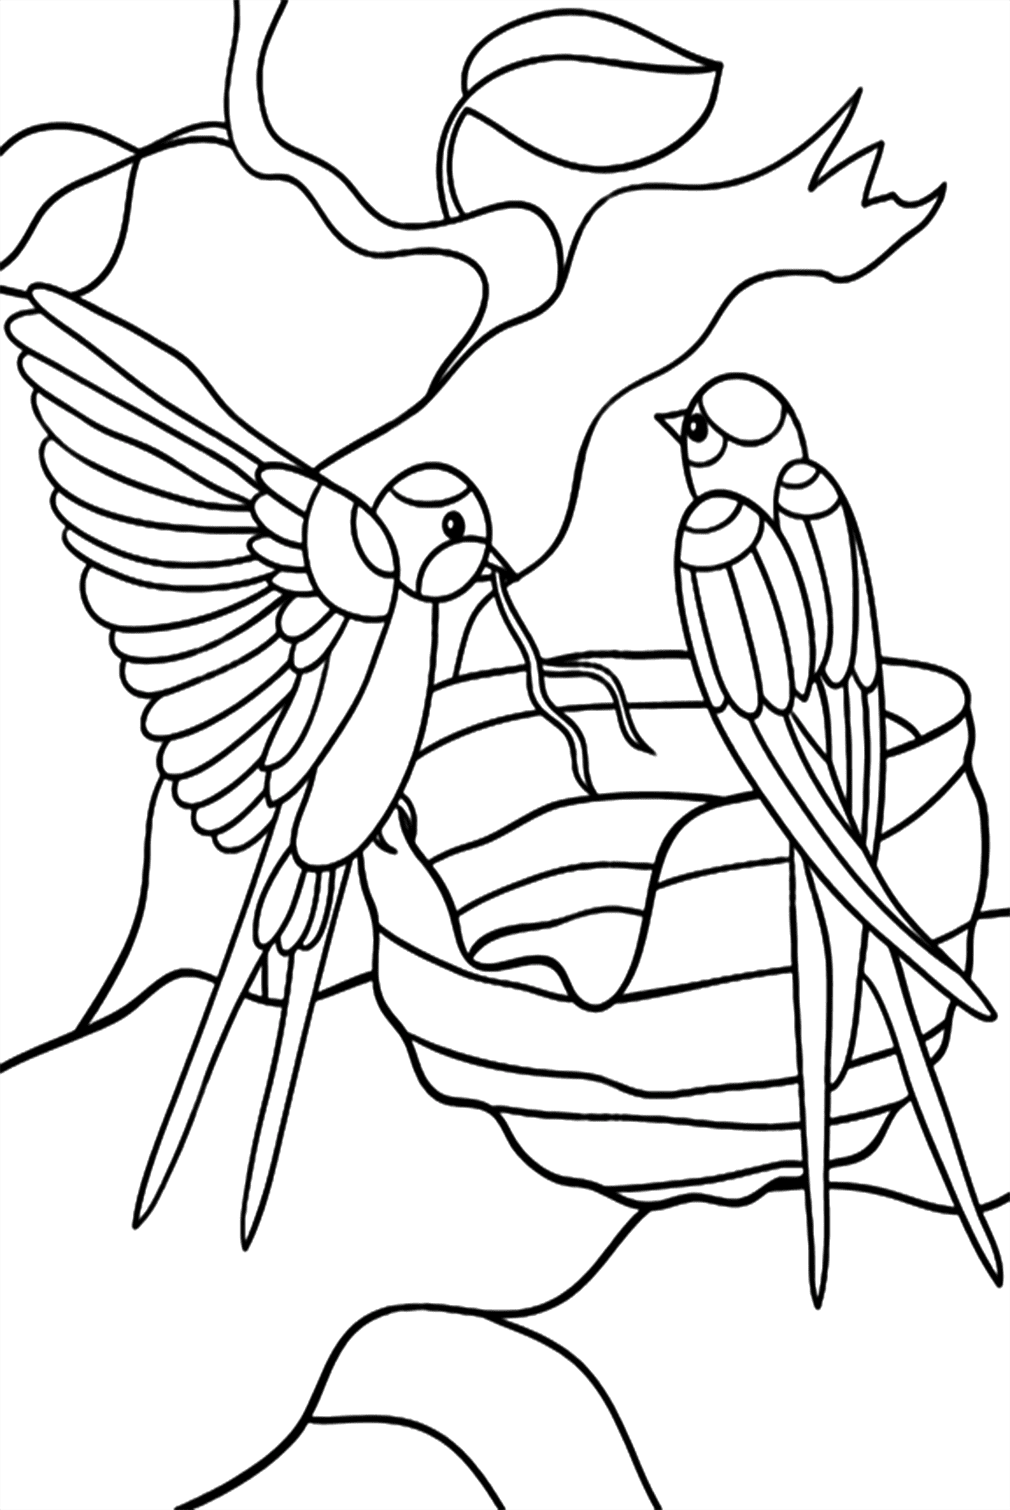 Desenhos para colorir de duas andorinhas from Swallow